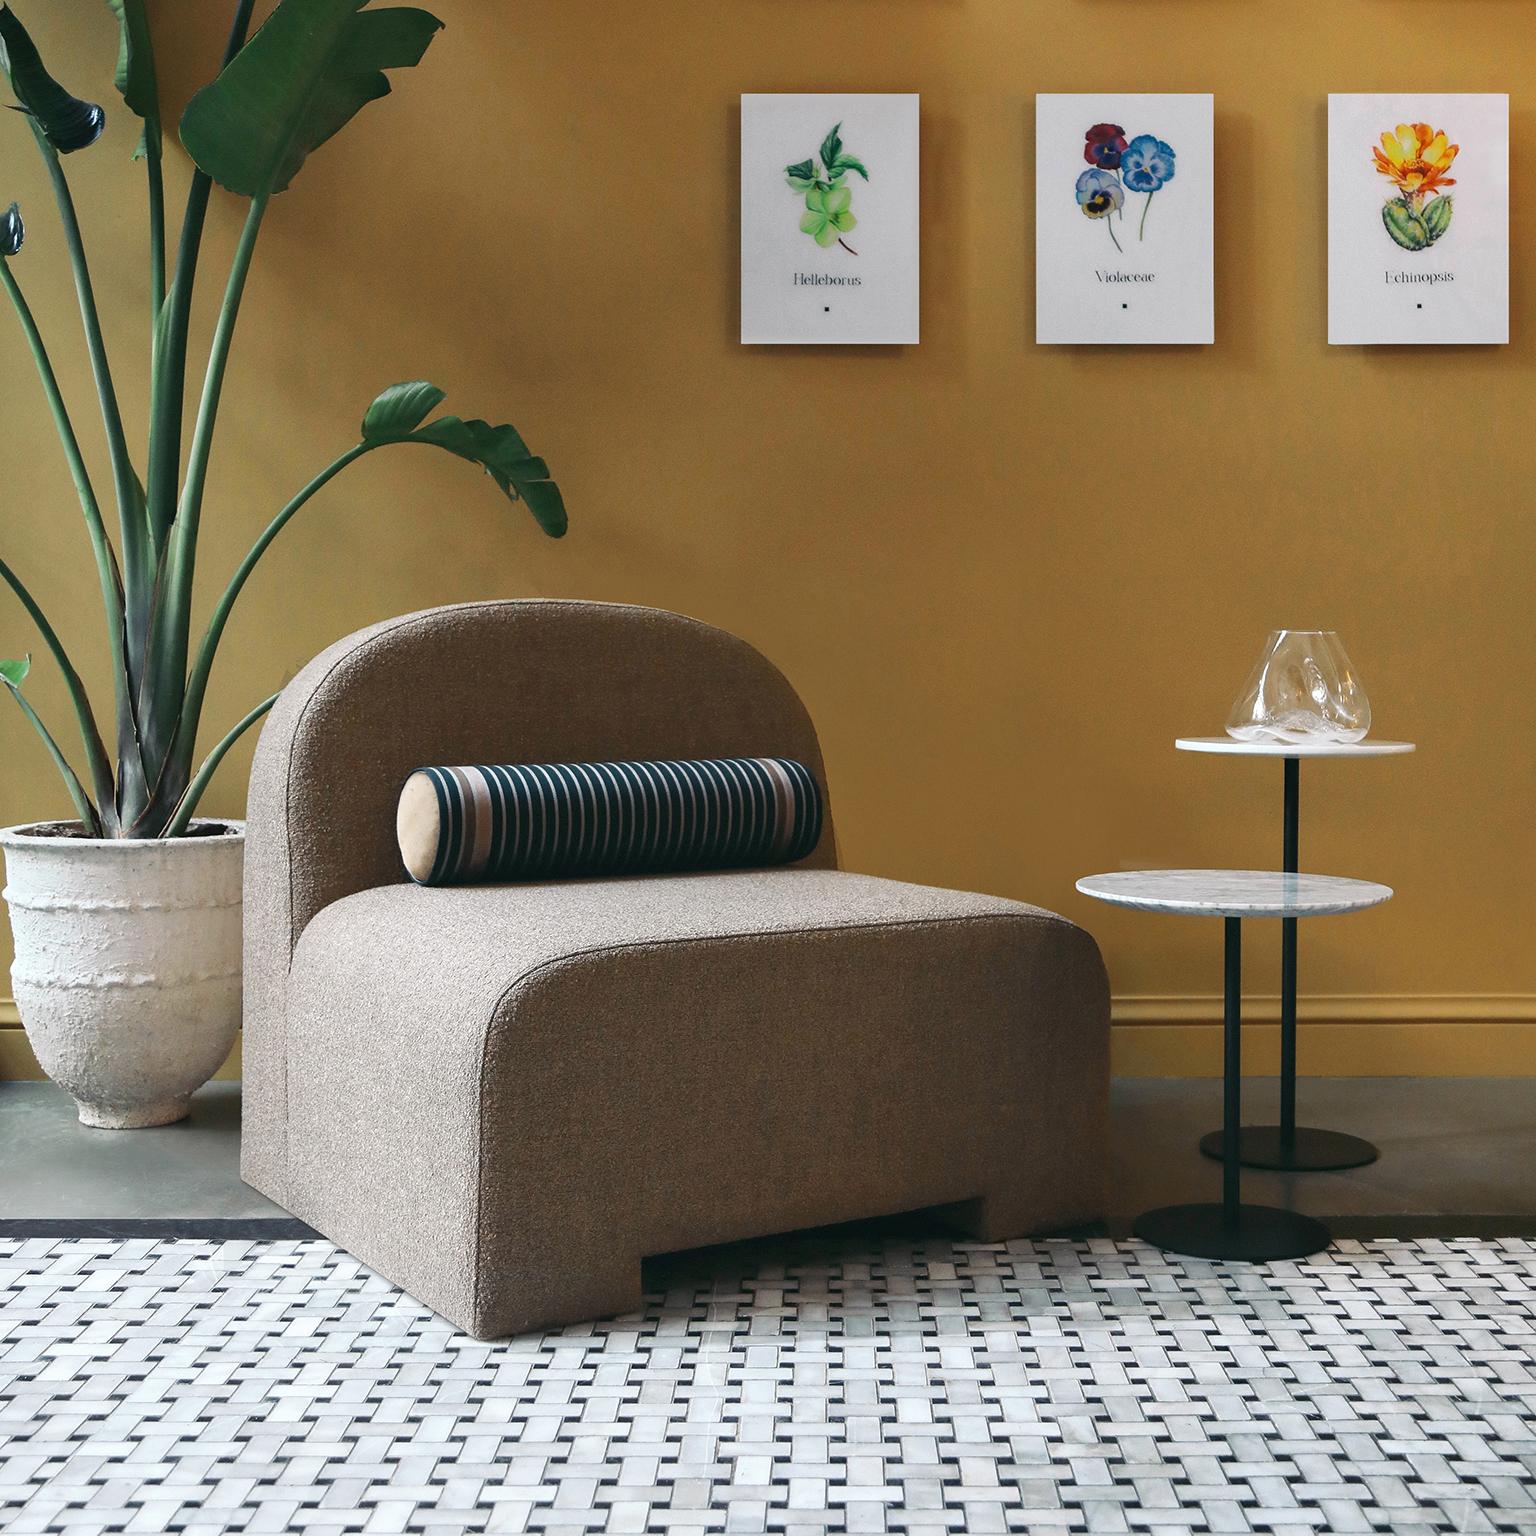 Mit seinen runden Details und der Polsterung, die die gesamte Oberfläche bedeckt, kommt Sosa Sofa mit seinem minimalistischen und einfachen Ansatz in Ihr Wohnzimmer, das Sie jeden Tag mit Freude erleben werden...

Maße: Länge: 35.4'' / Tiefe: 33.5''